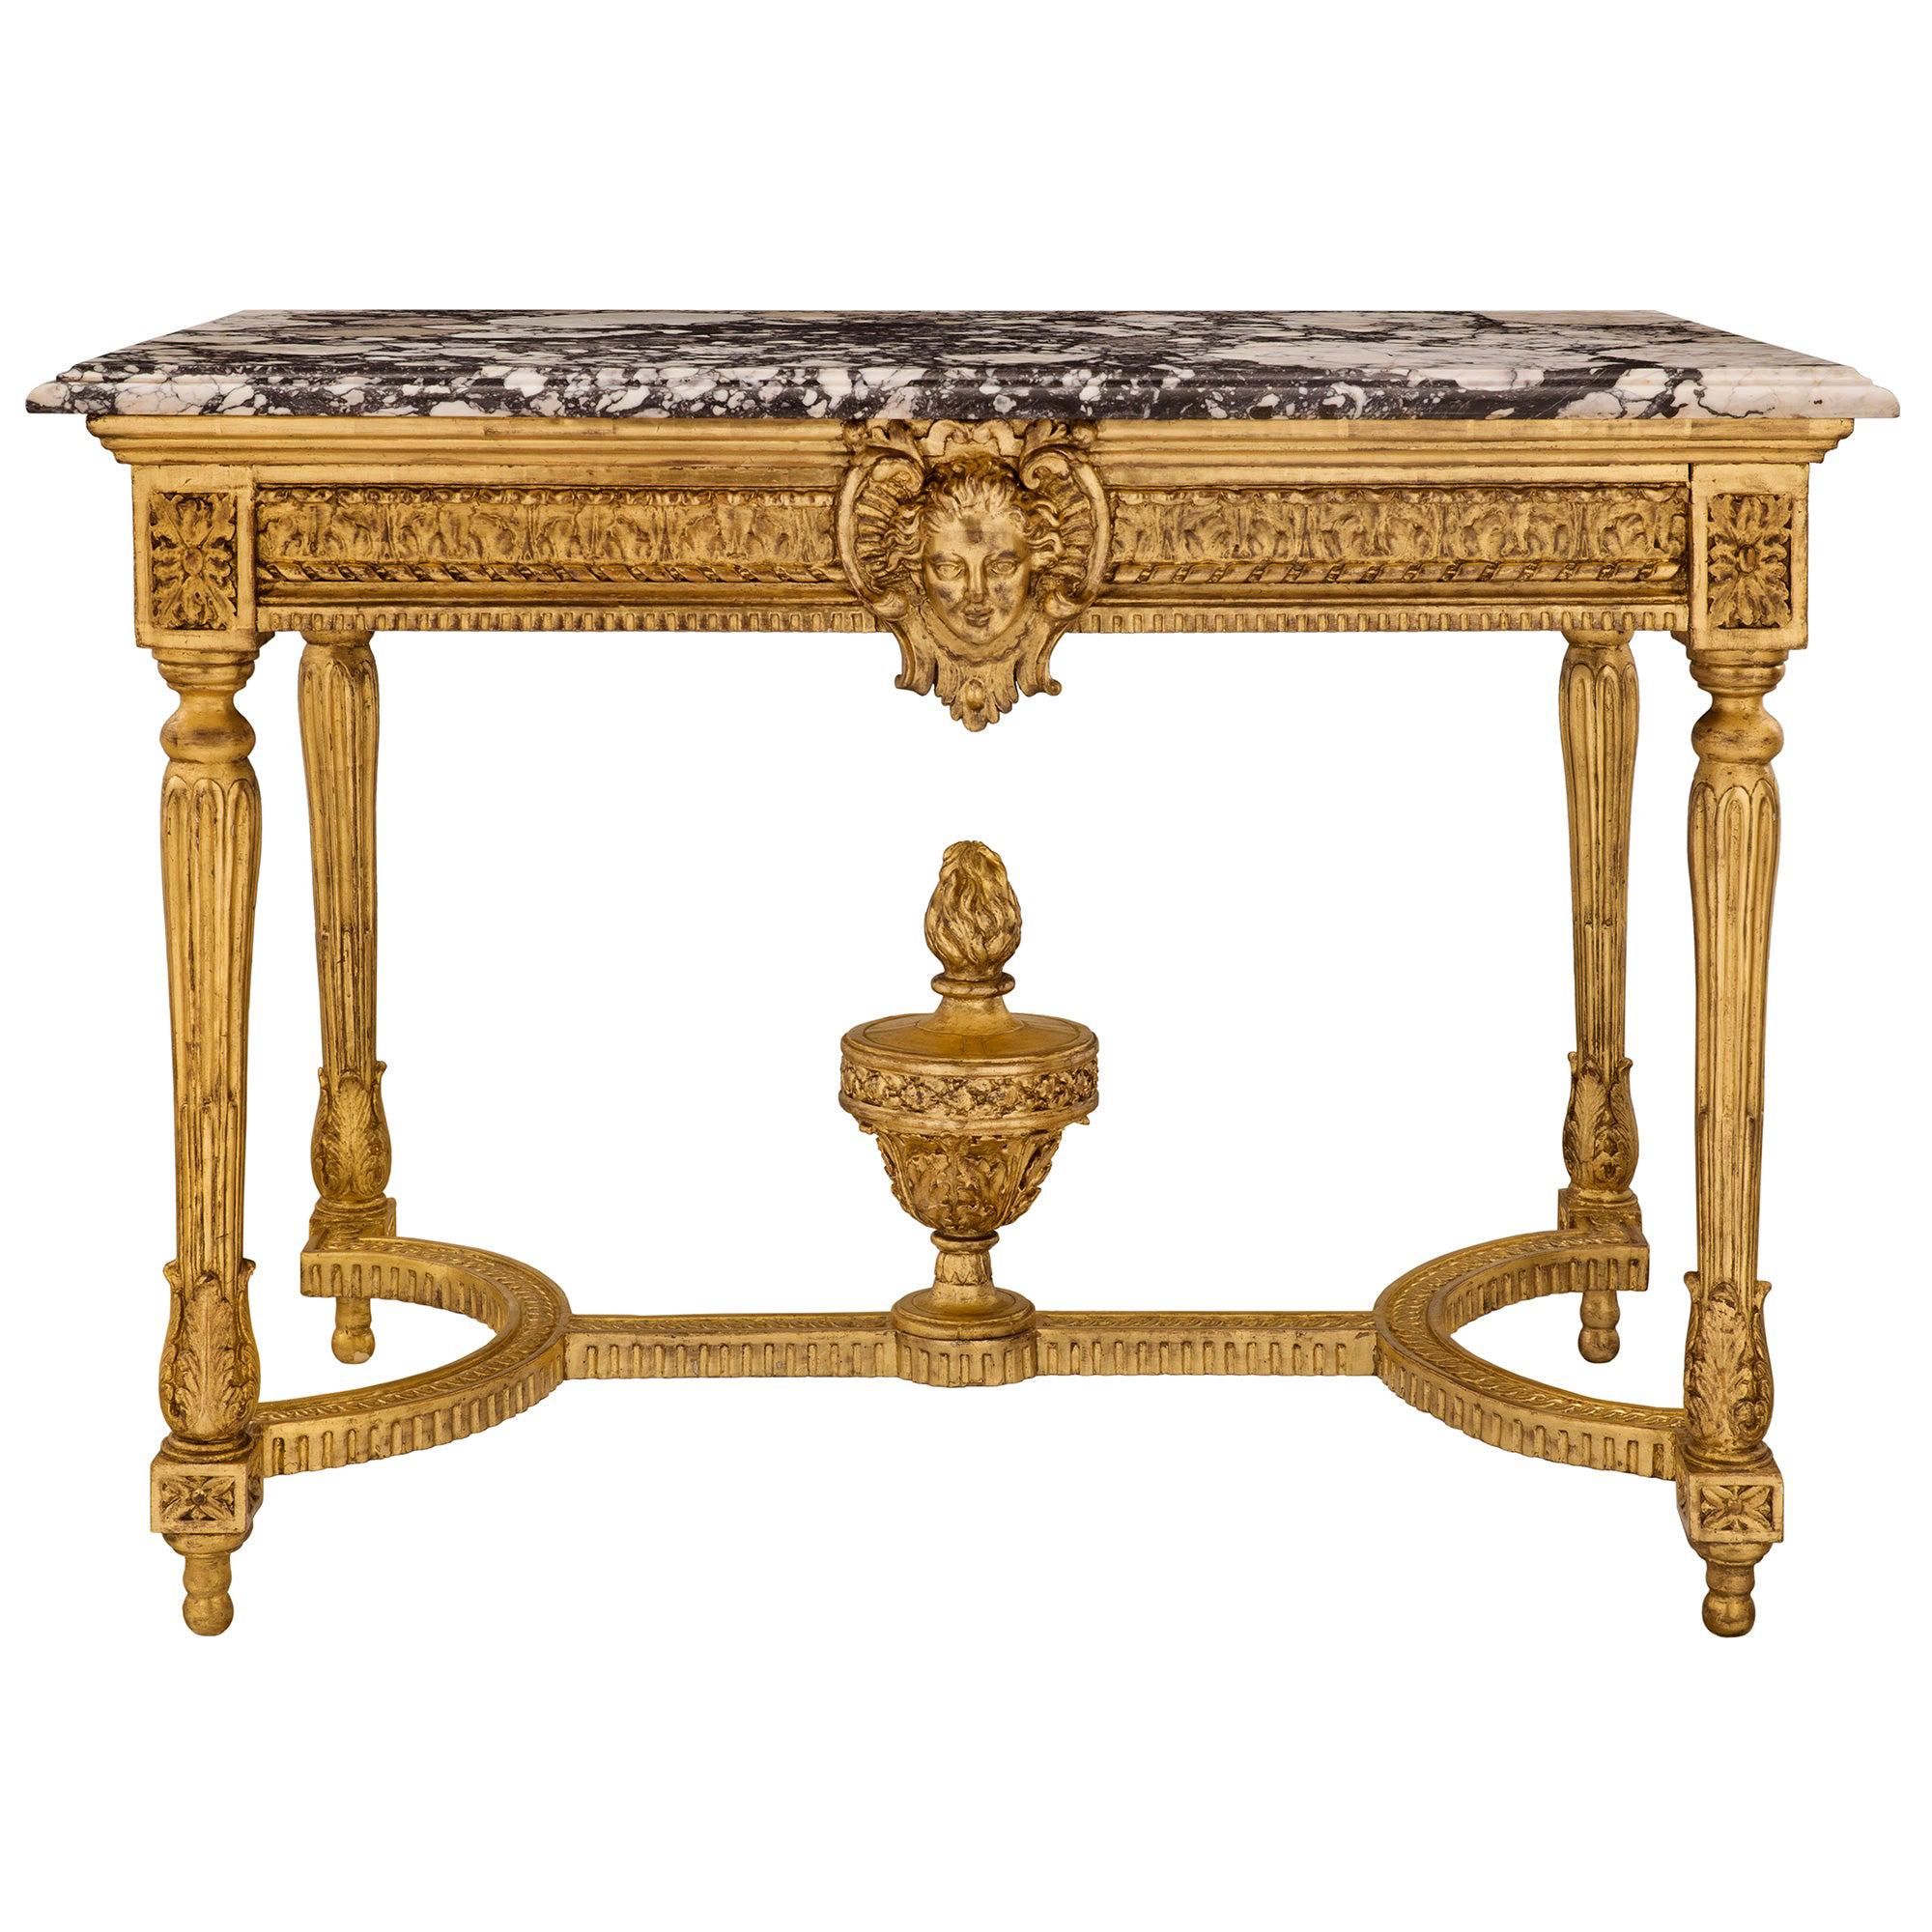 Centre de table en bois doré de style Louis XVI du milieu du XIXe siècle français